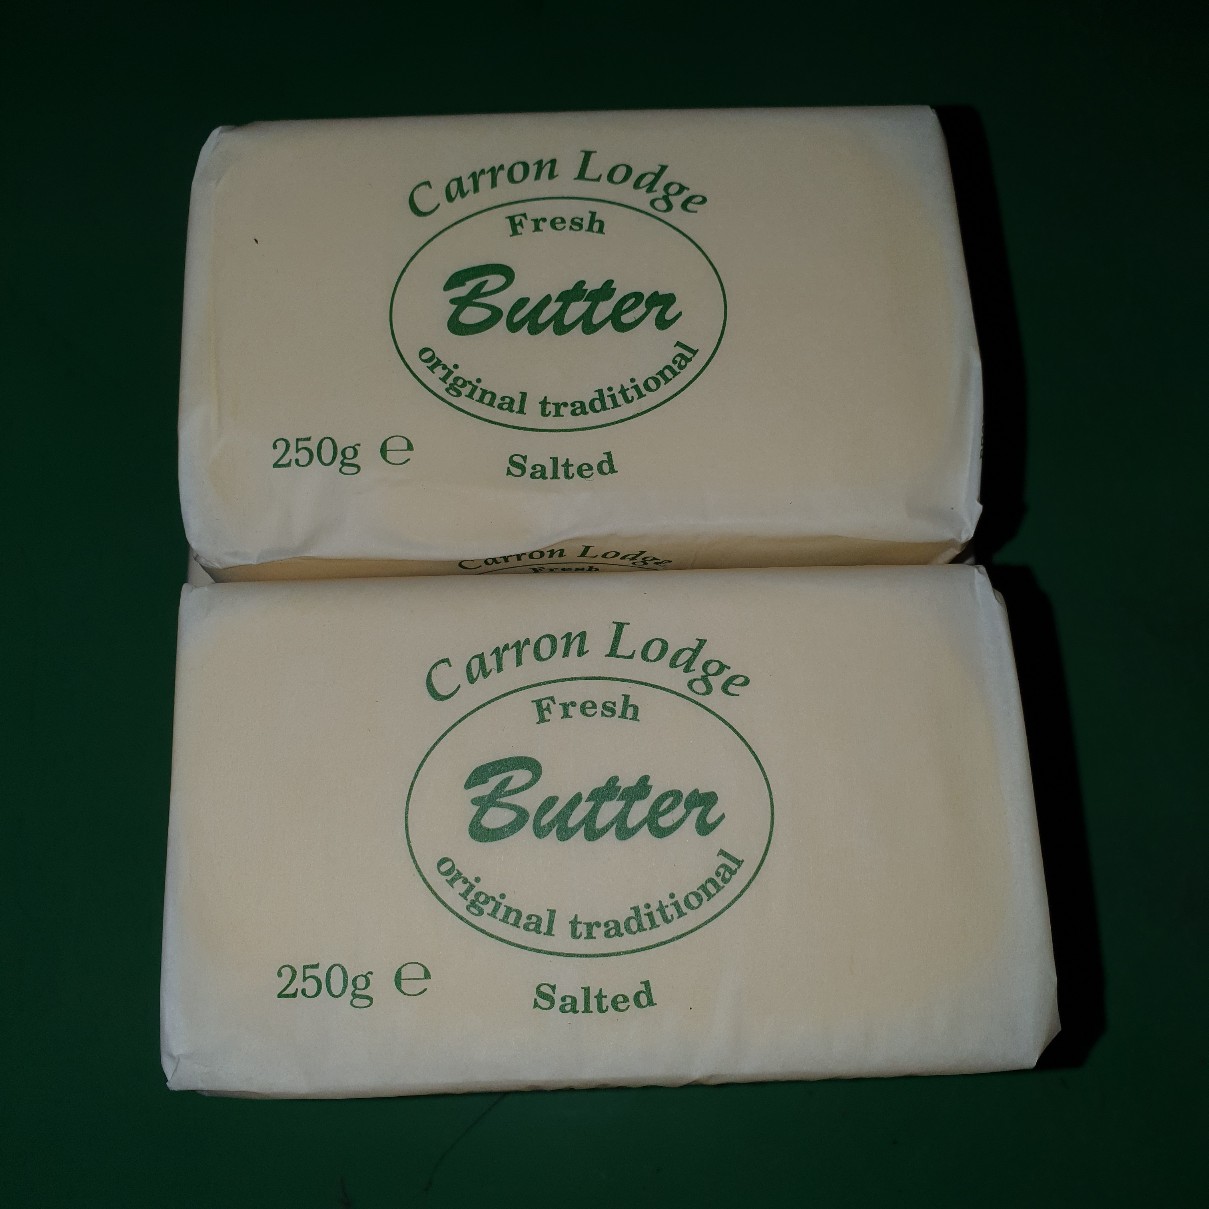 Fresh Butter Salted 250g - £ 1.60  per each